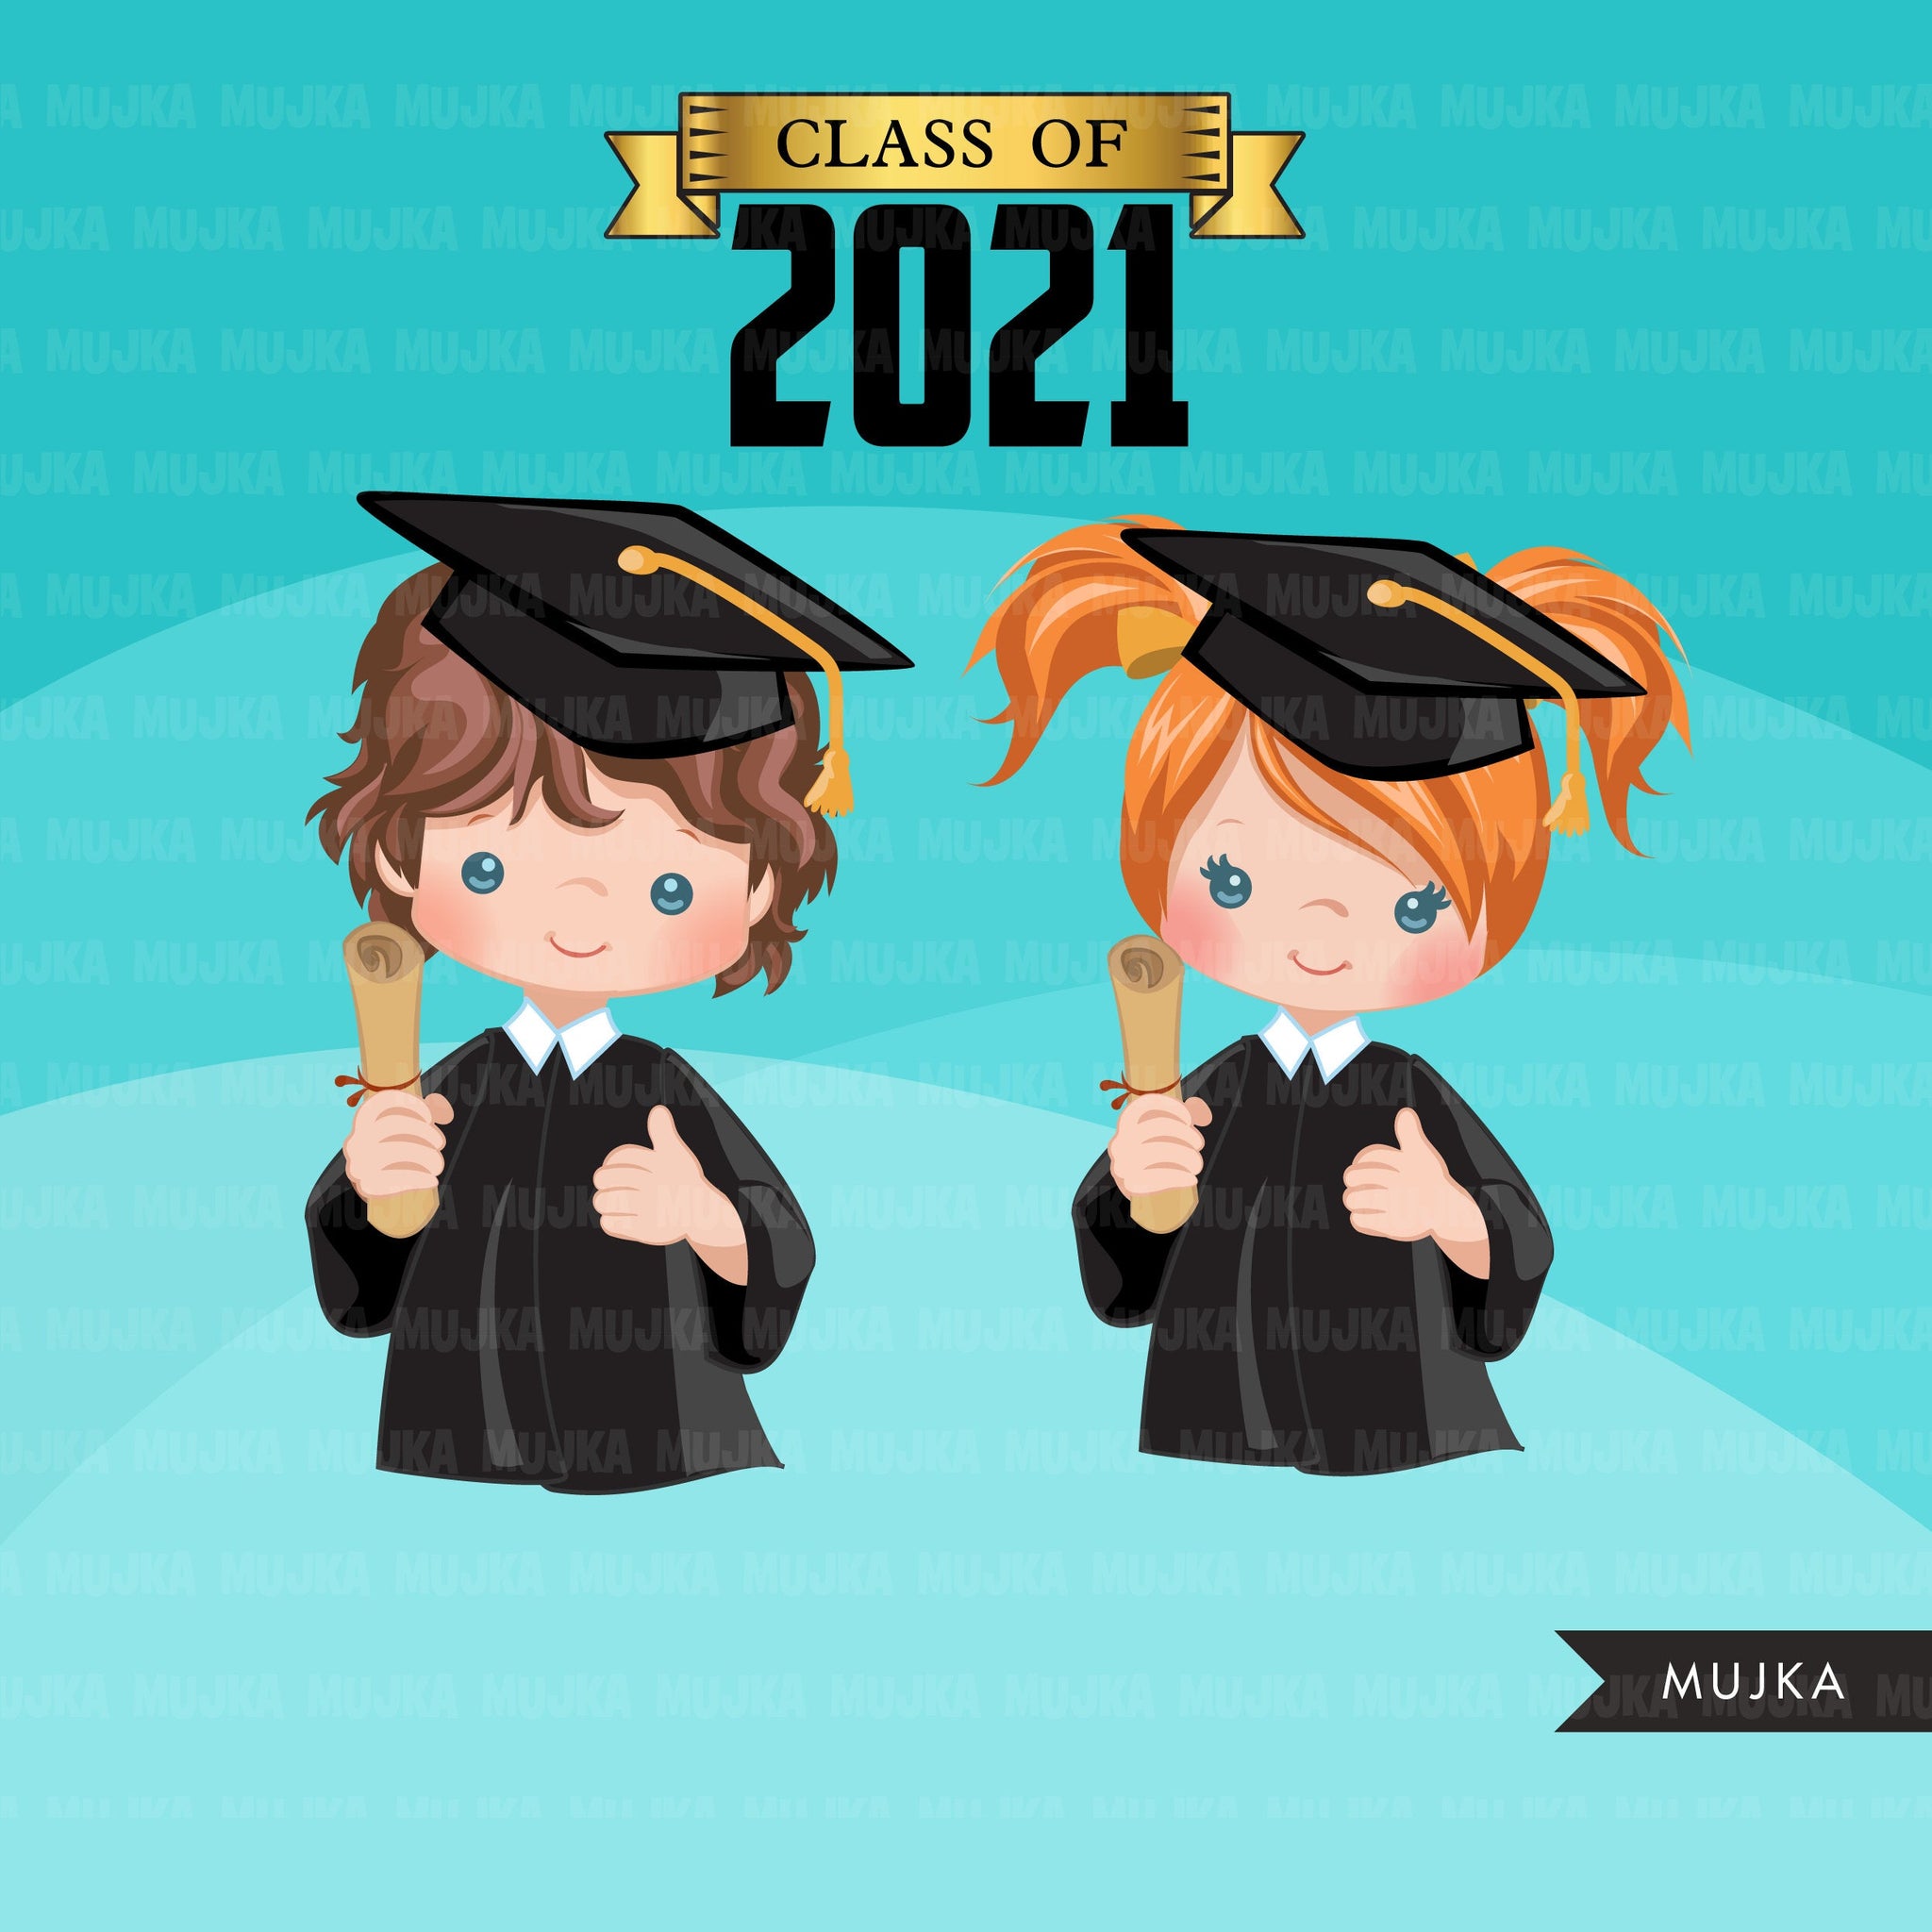 Graduation clipart bundle, grads sublimation designs digital download, school clipart class of 2023, png files for cricut, boy, girl